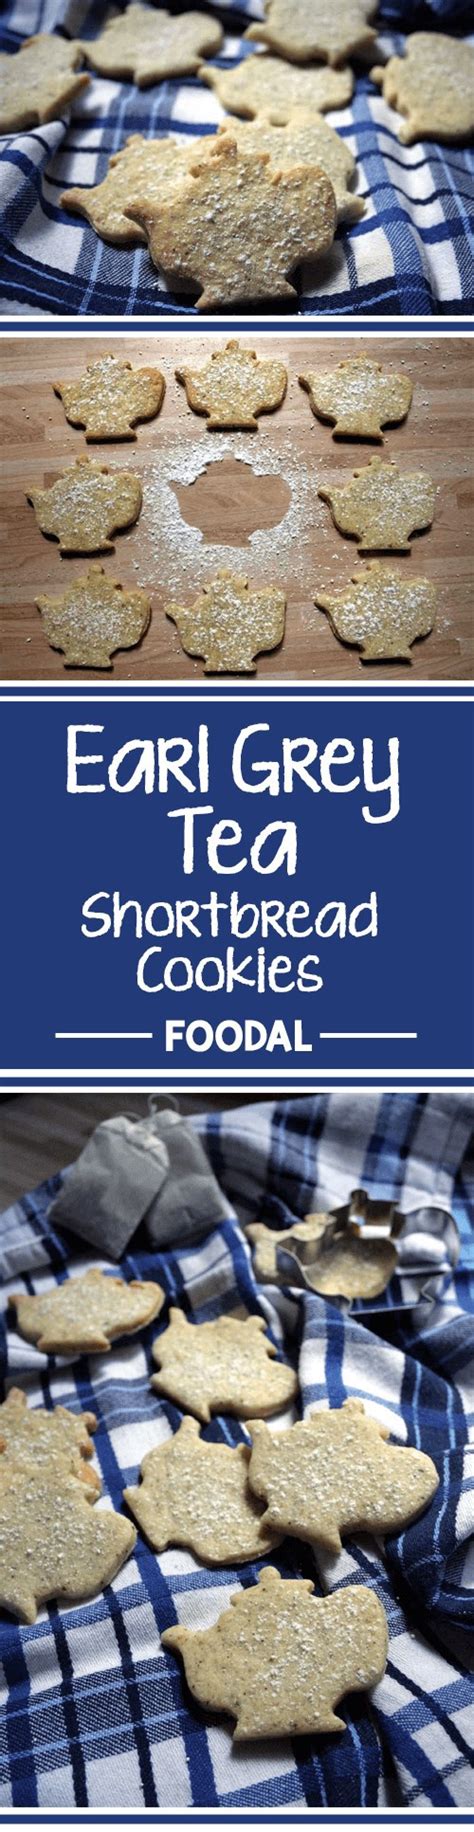 Earl Grey Tea Flavored Shortbread Cookies Foodal